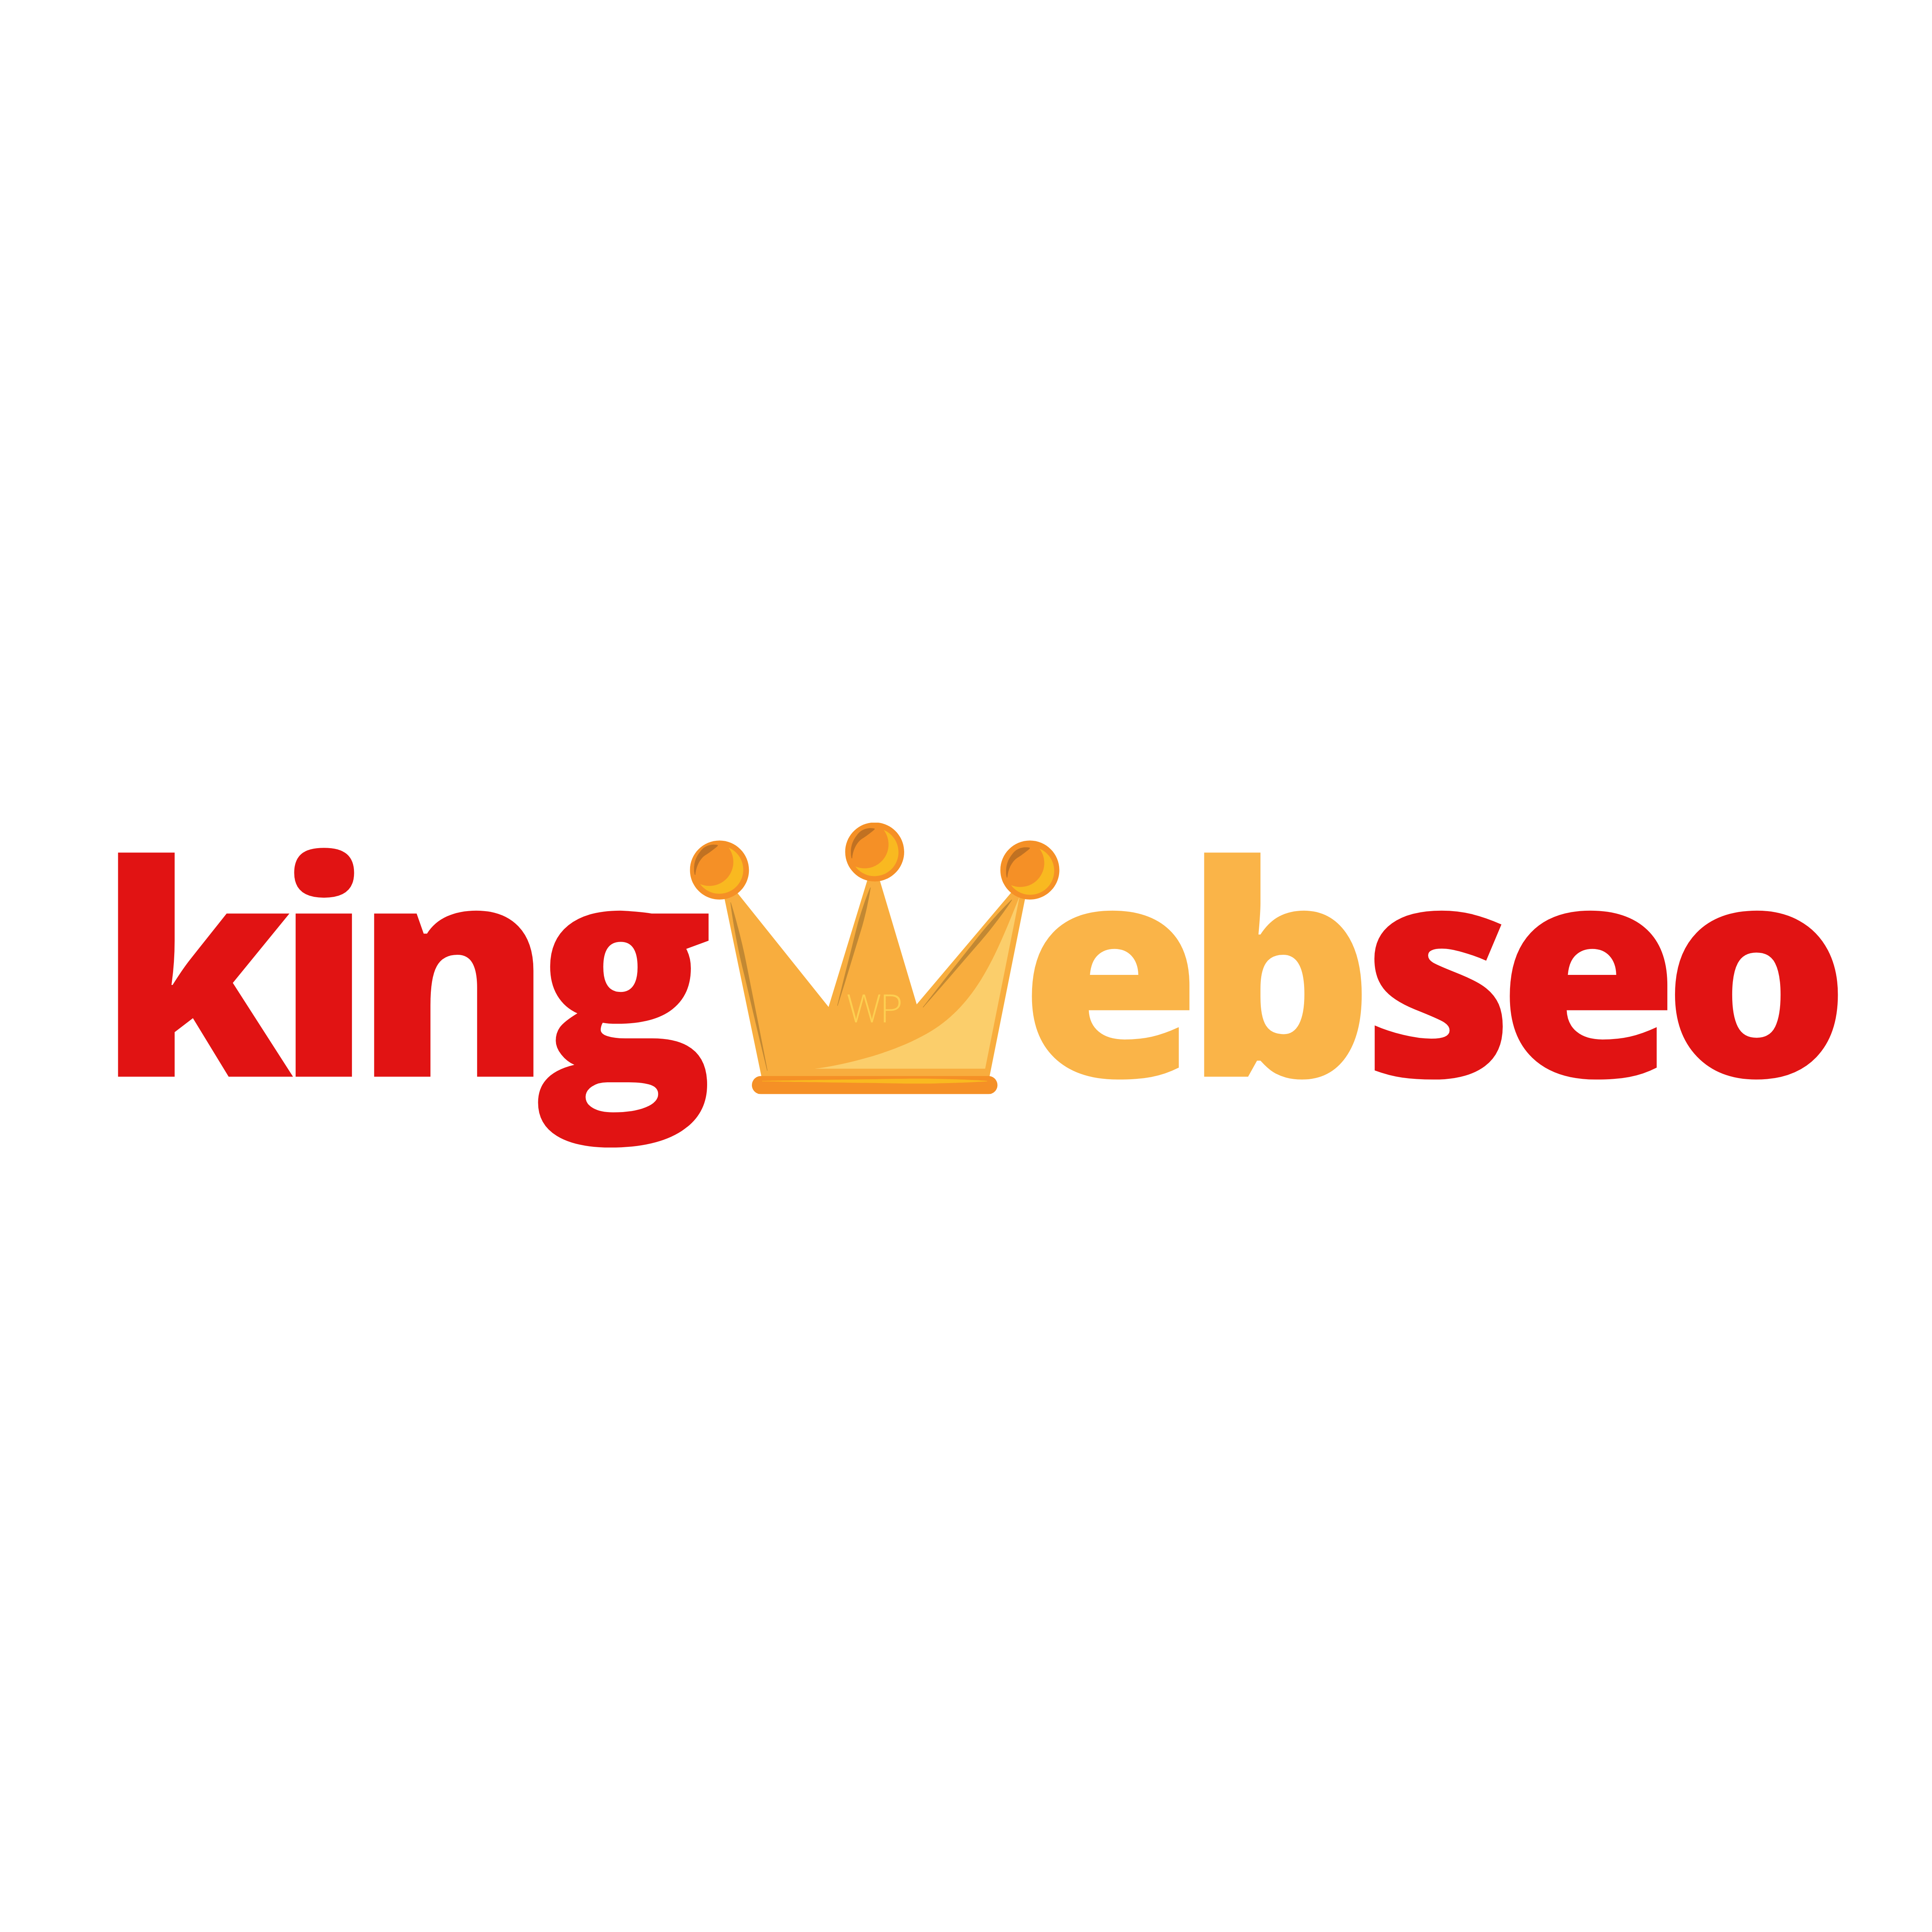 (c) Kingwebseo.com